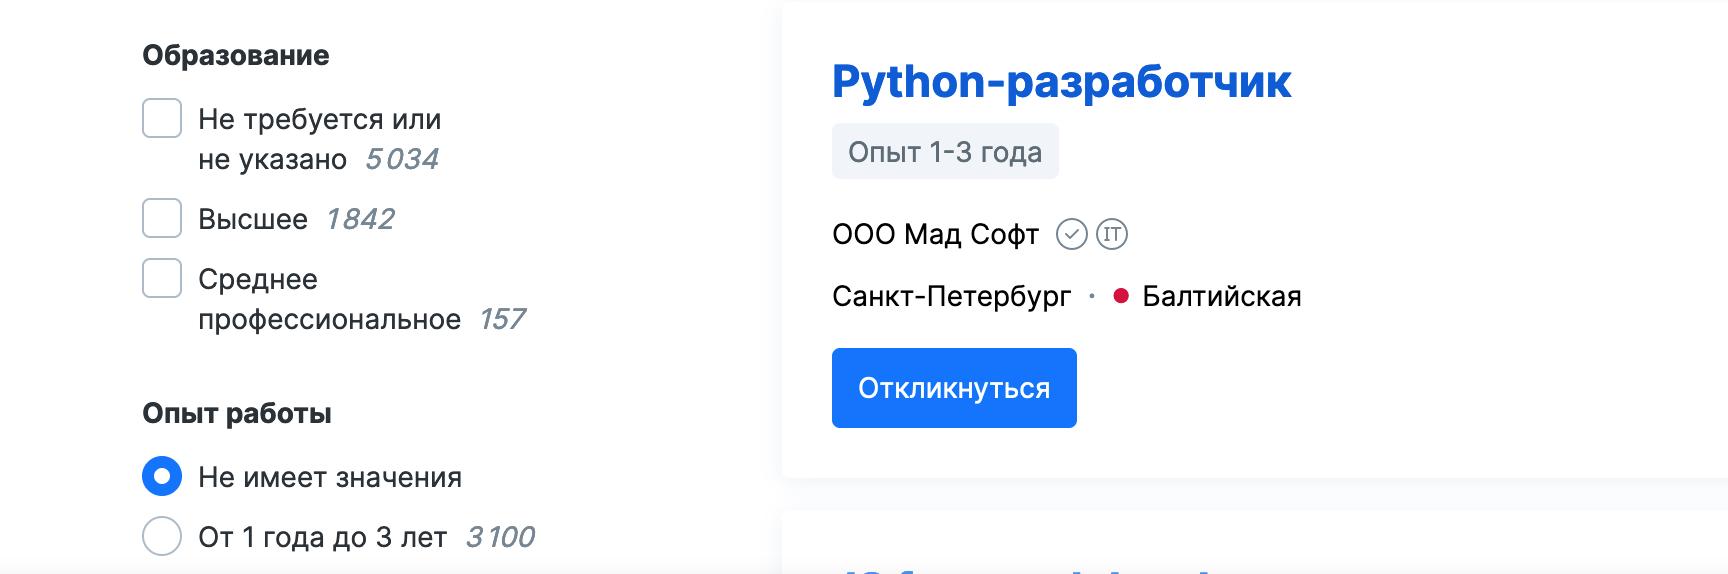 Результаты поиска вакансий разработчика на hh.ru